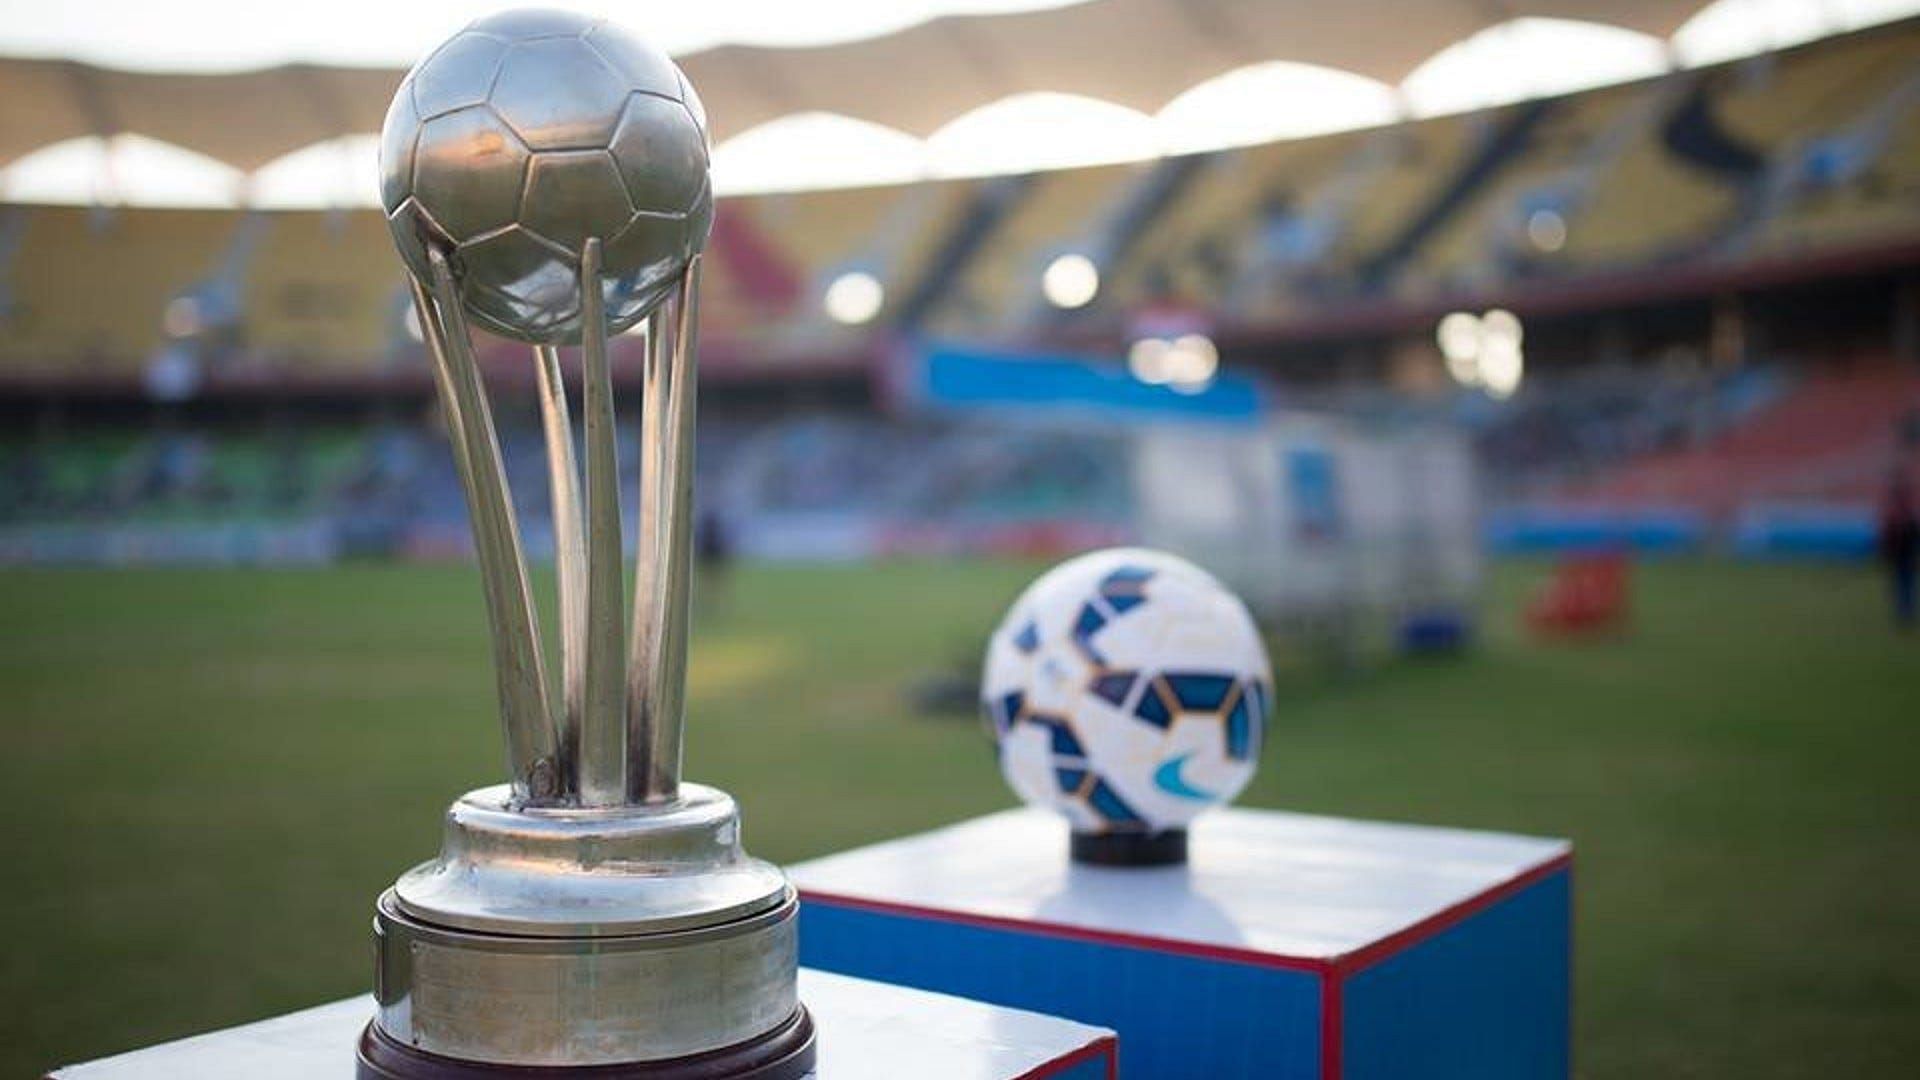 SAFF चैंपियनशिप दक्षिण एशियाई देशों की बीच हर दो सालों में होने वाली फुटबॉल प्रतियोगिता है।